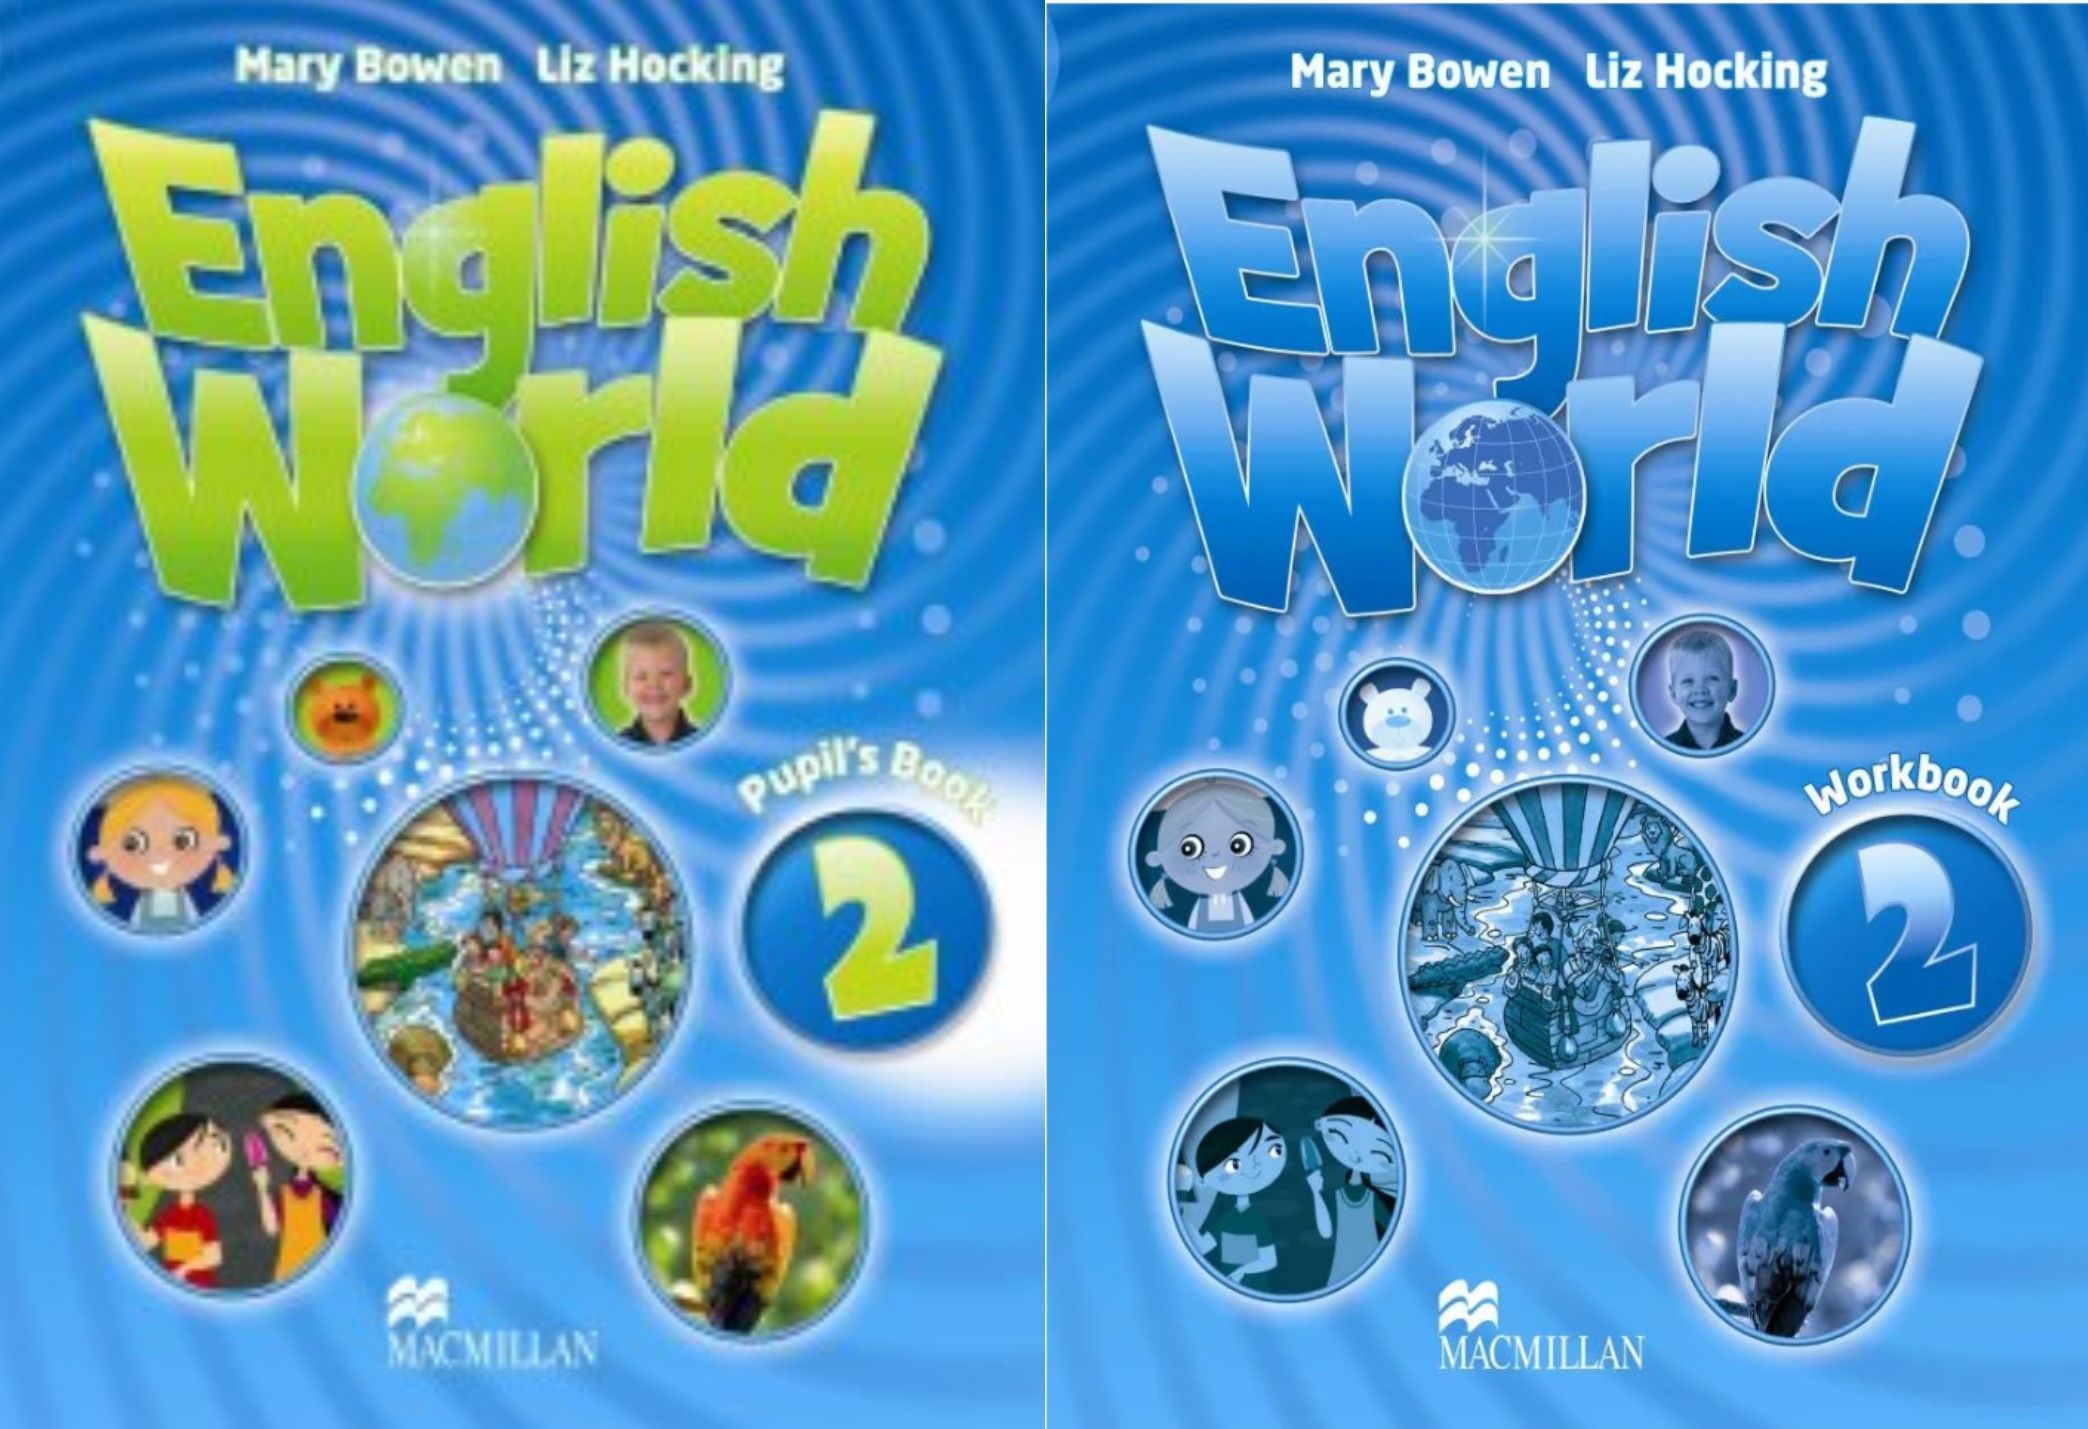 5 worlds book 3. English World 2 pupil's book книга. English World 1 pupil's book рабочая тетрадь. Macmillan English World 2. Mary Bowen Liz Hocking English World book 2.